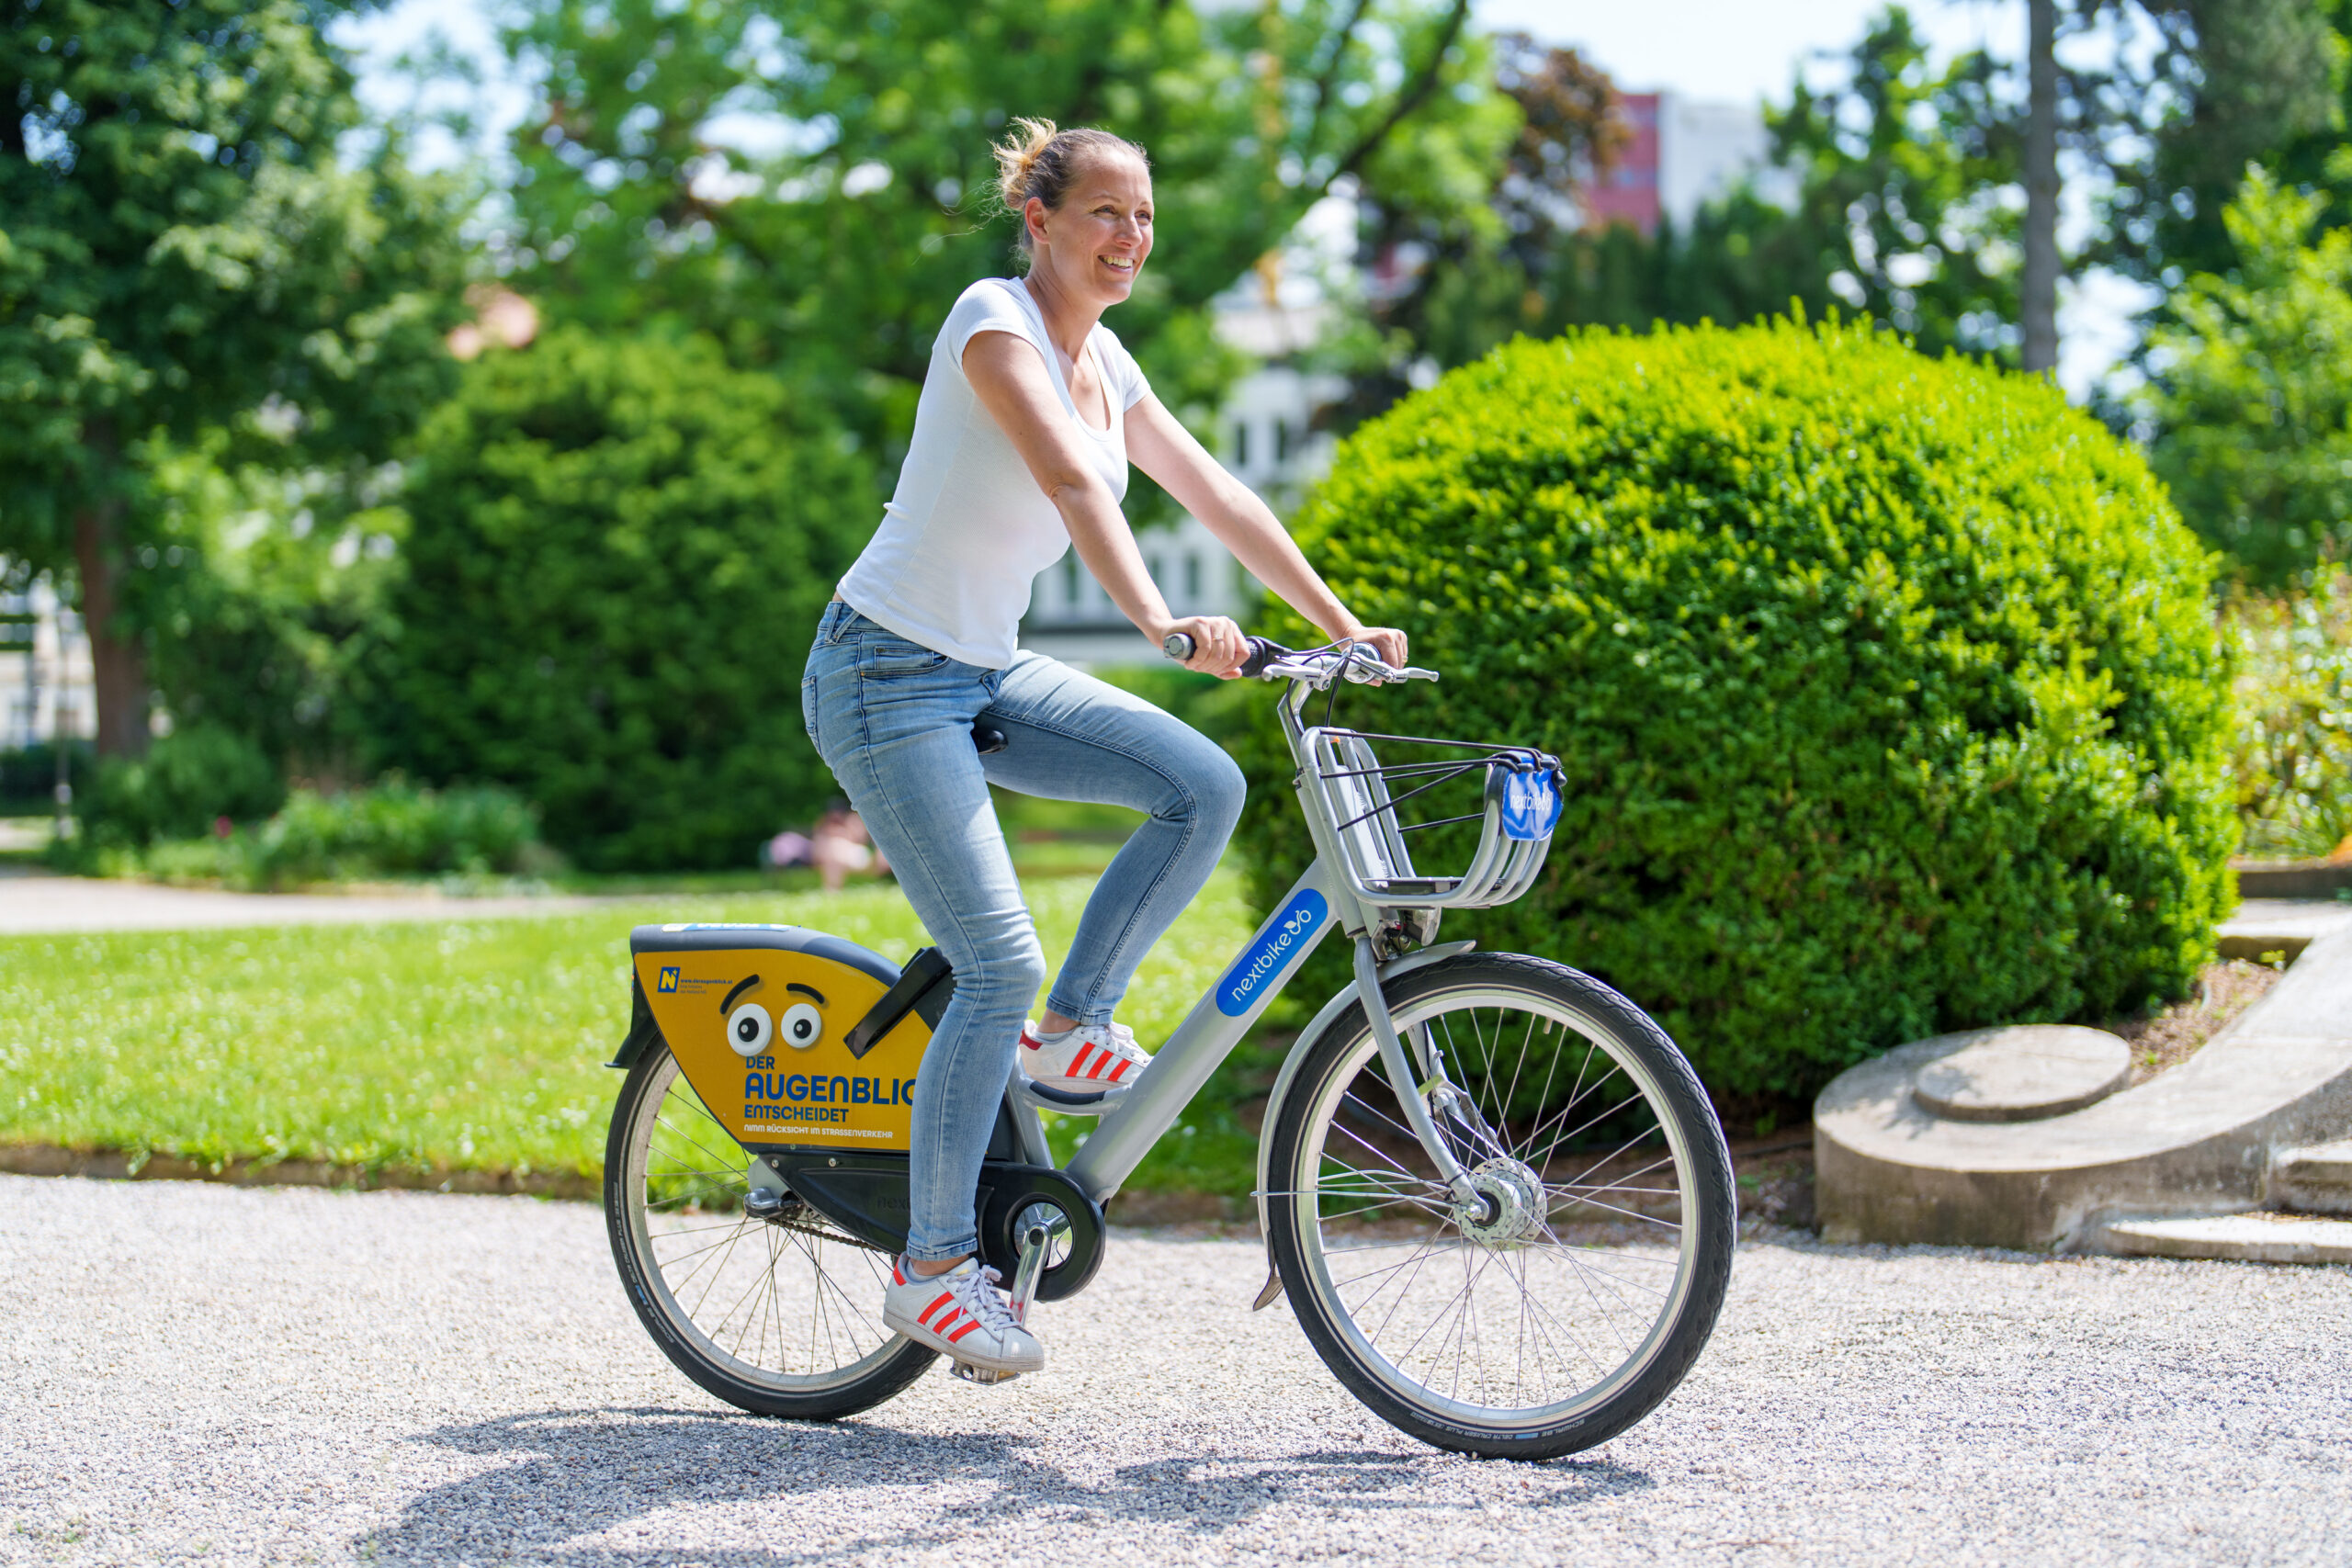 Grafenegg Festival geht neue Wege – ressourcenschonende Anreise mit dem Leih-Fahrrad von nextbike